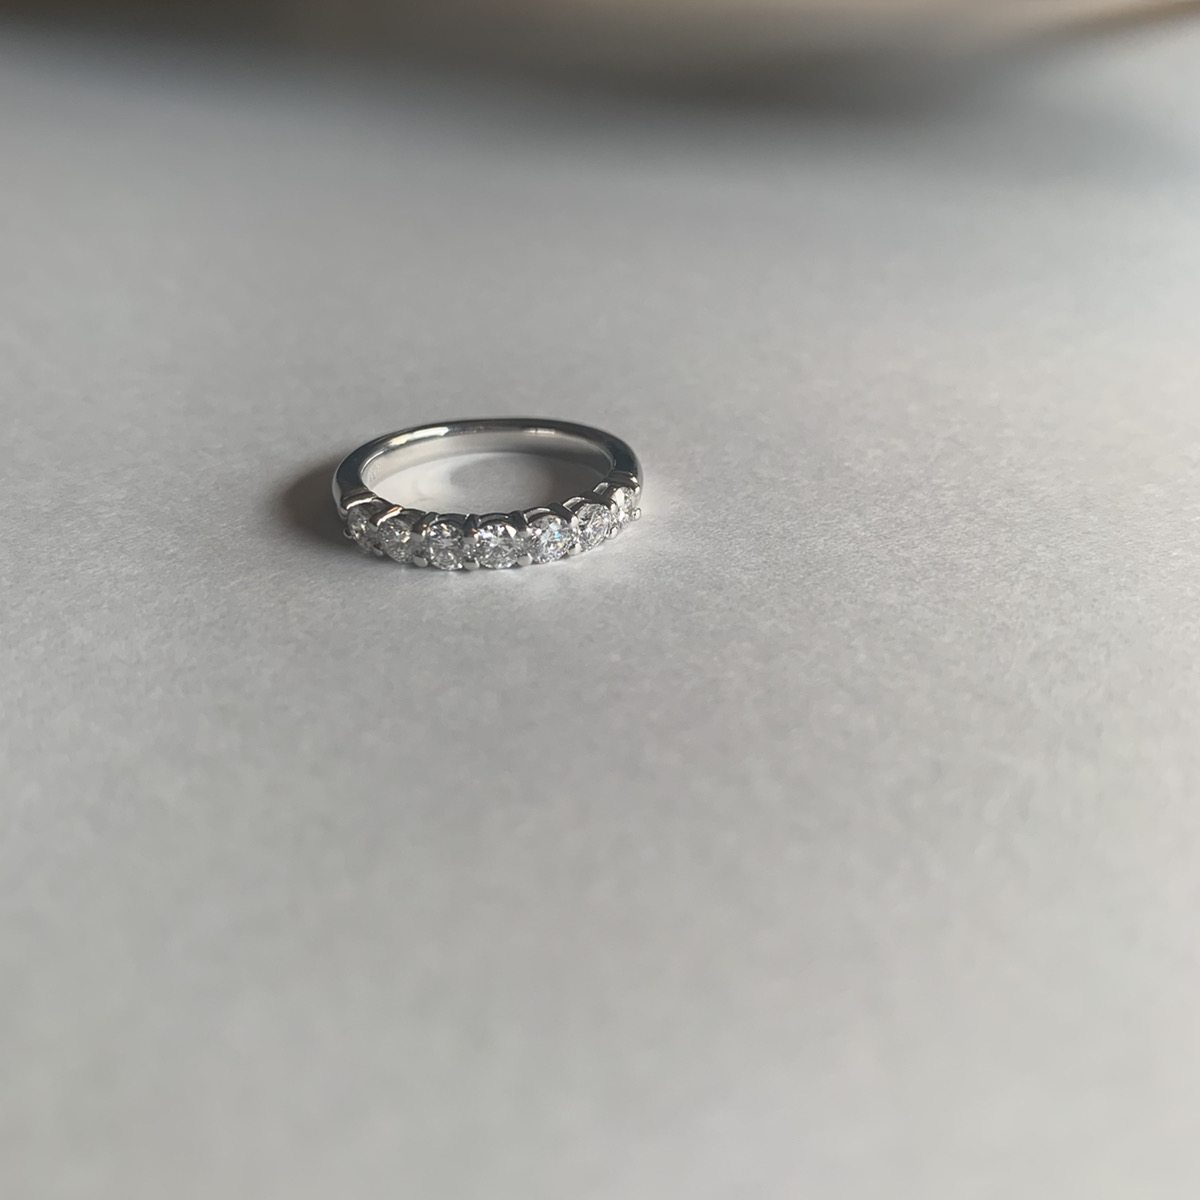 『品質保証』1.0 ctダイヤモンドリングPT 950プラチナ結婚指輪40